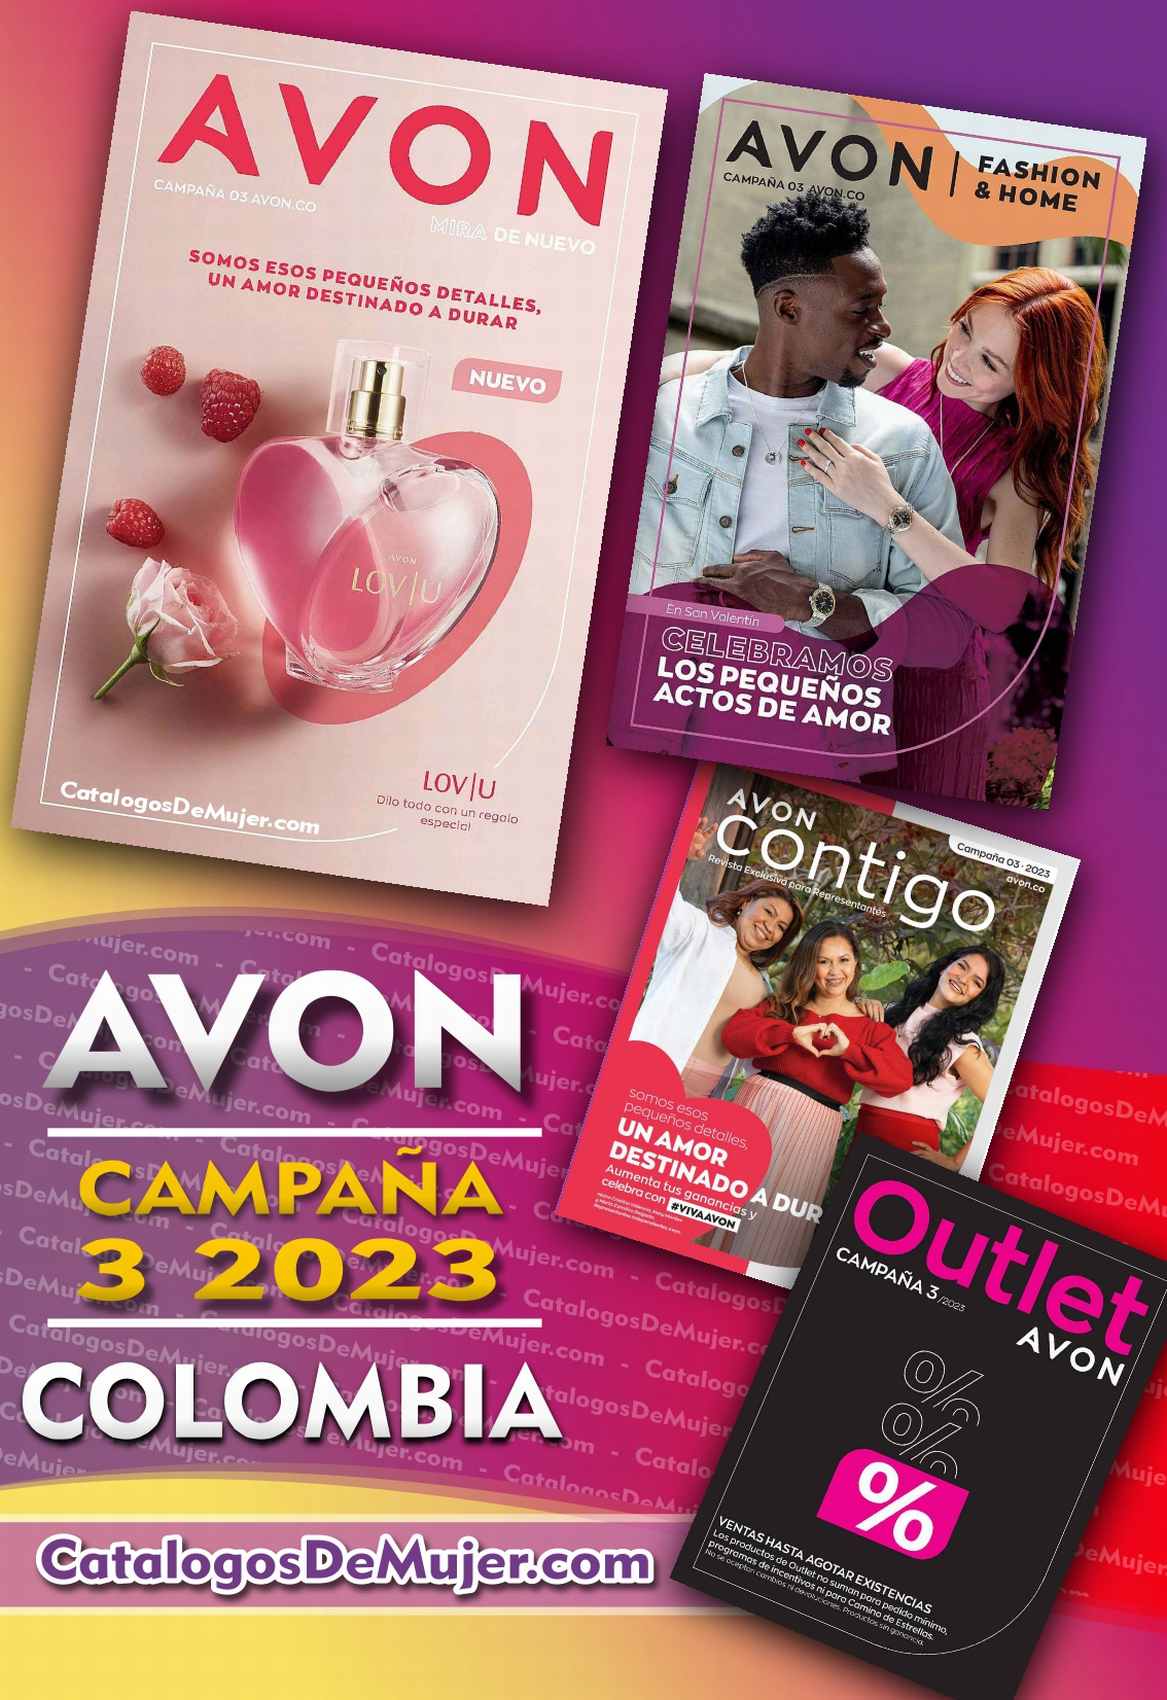 Catálogo Avon Campaña 3 Colombia 2023